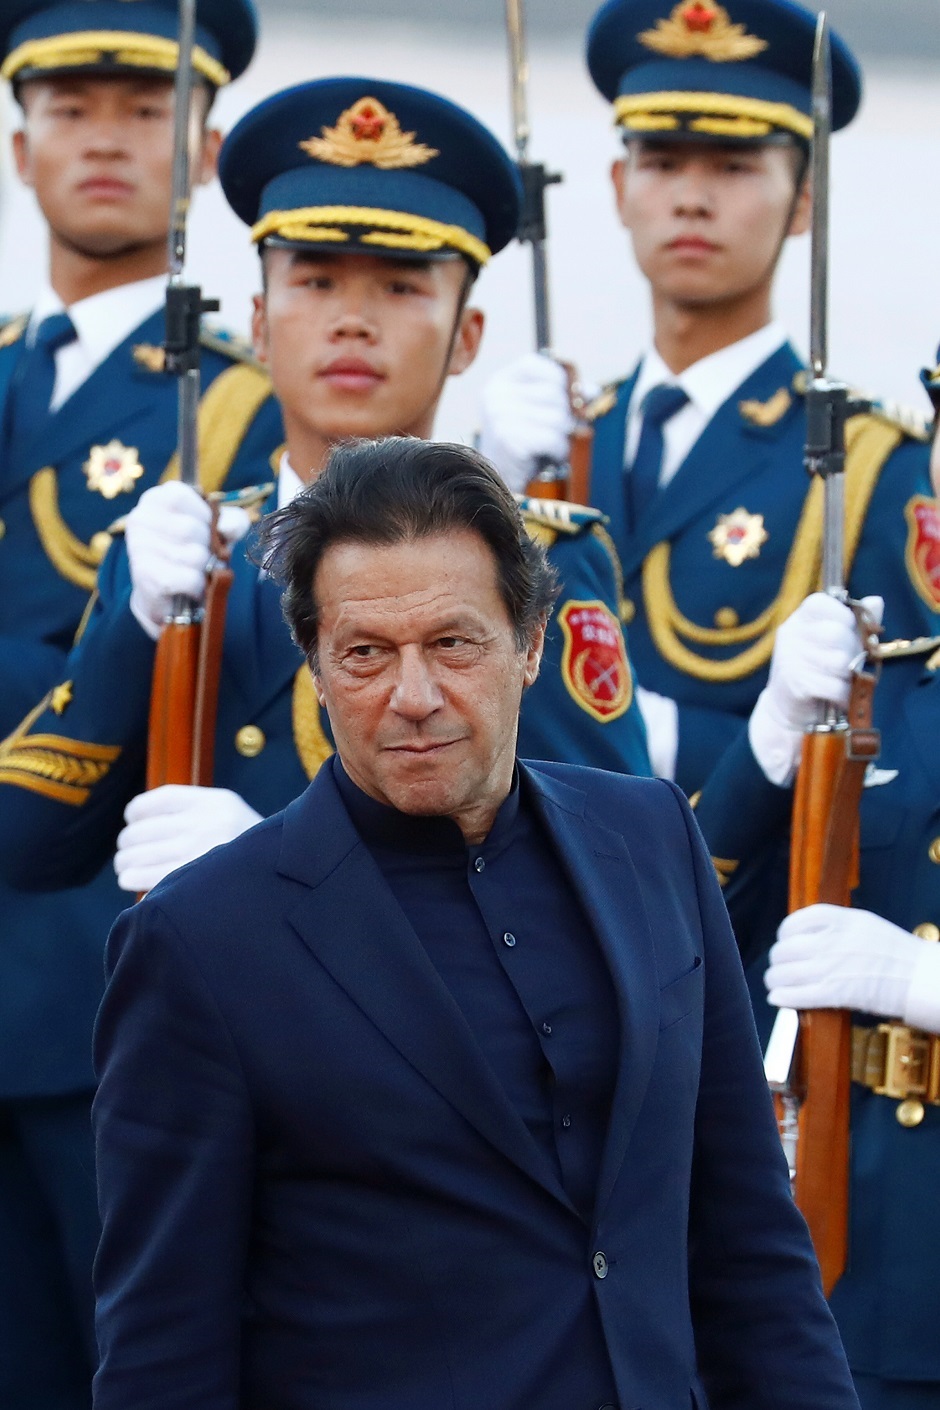 Pakistan's Prime Minister Imran Khan. PHOTO: Reuters